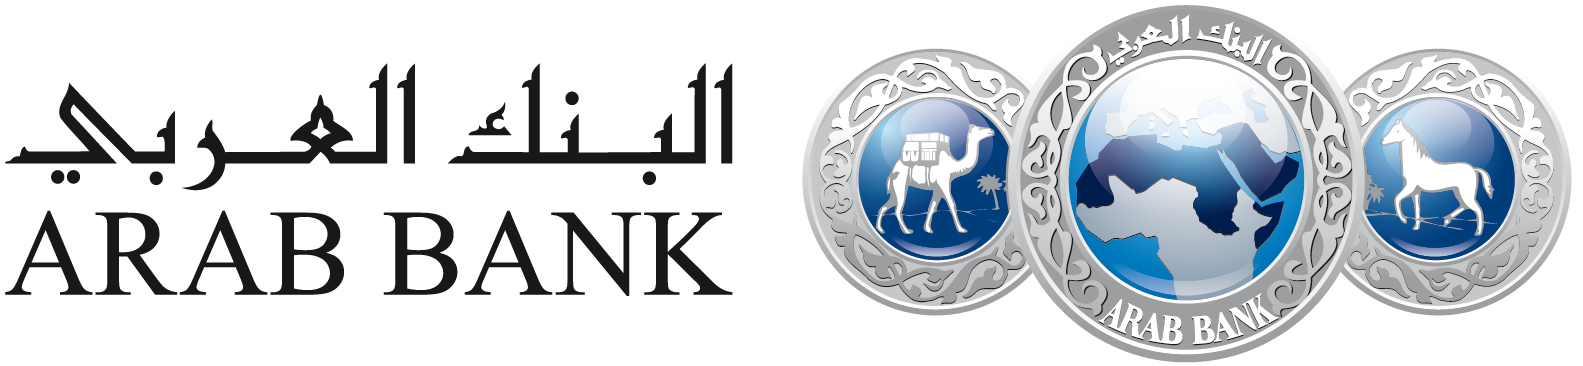 https://www.arabbank.com.jo/